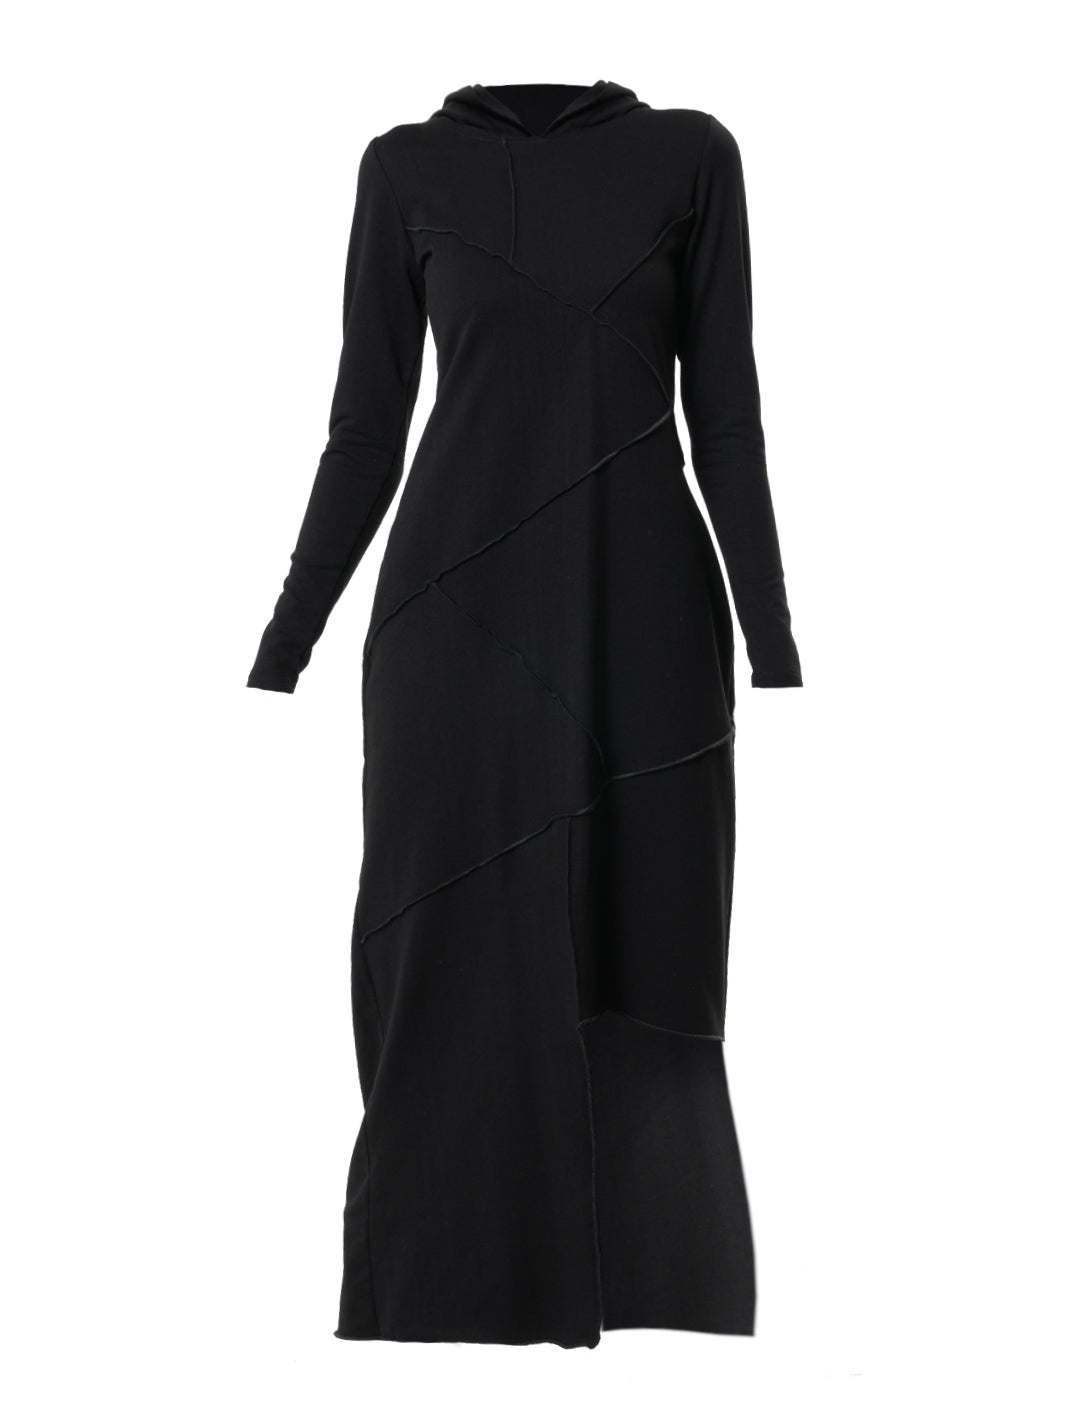 Асимметричное черное платье с капюшоном